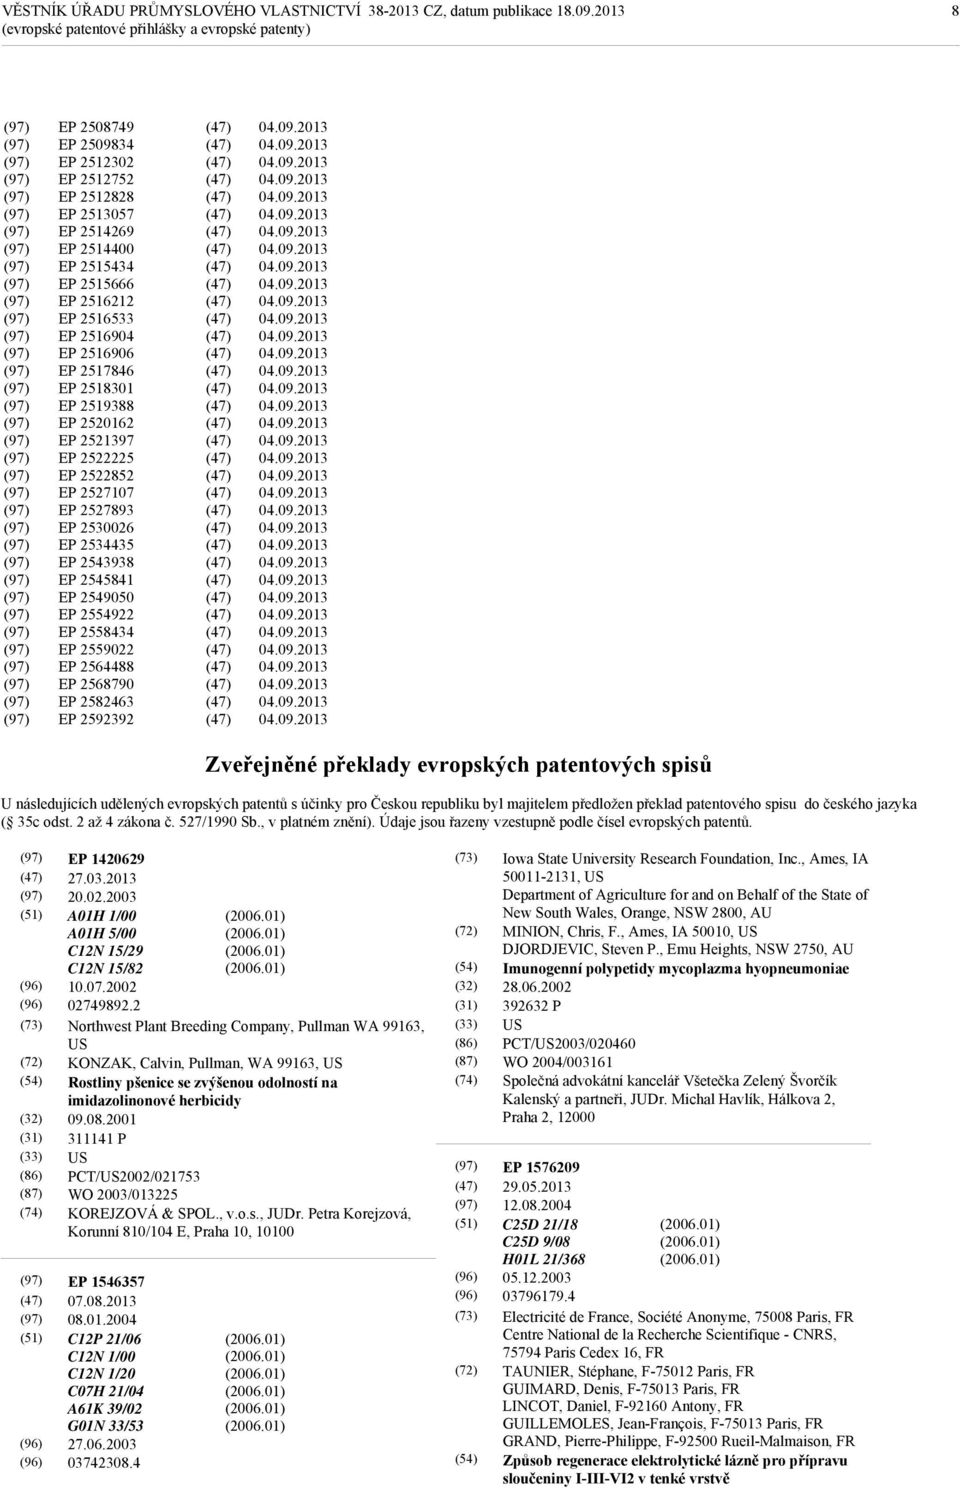 2564488 EP 2568790 EP 2582463 EP 2592392 Zveřejněné překlady evropských patentových spisů U následujících udělených evropských patentů s účinky pro Českou republiku byl majitelem předložen překlad